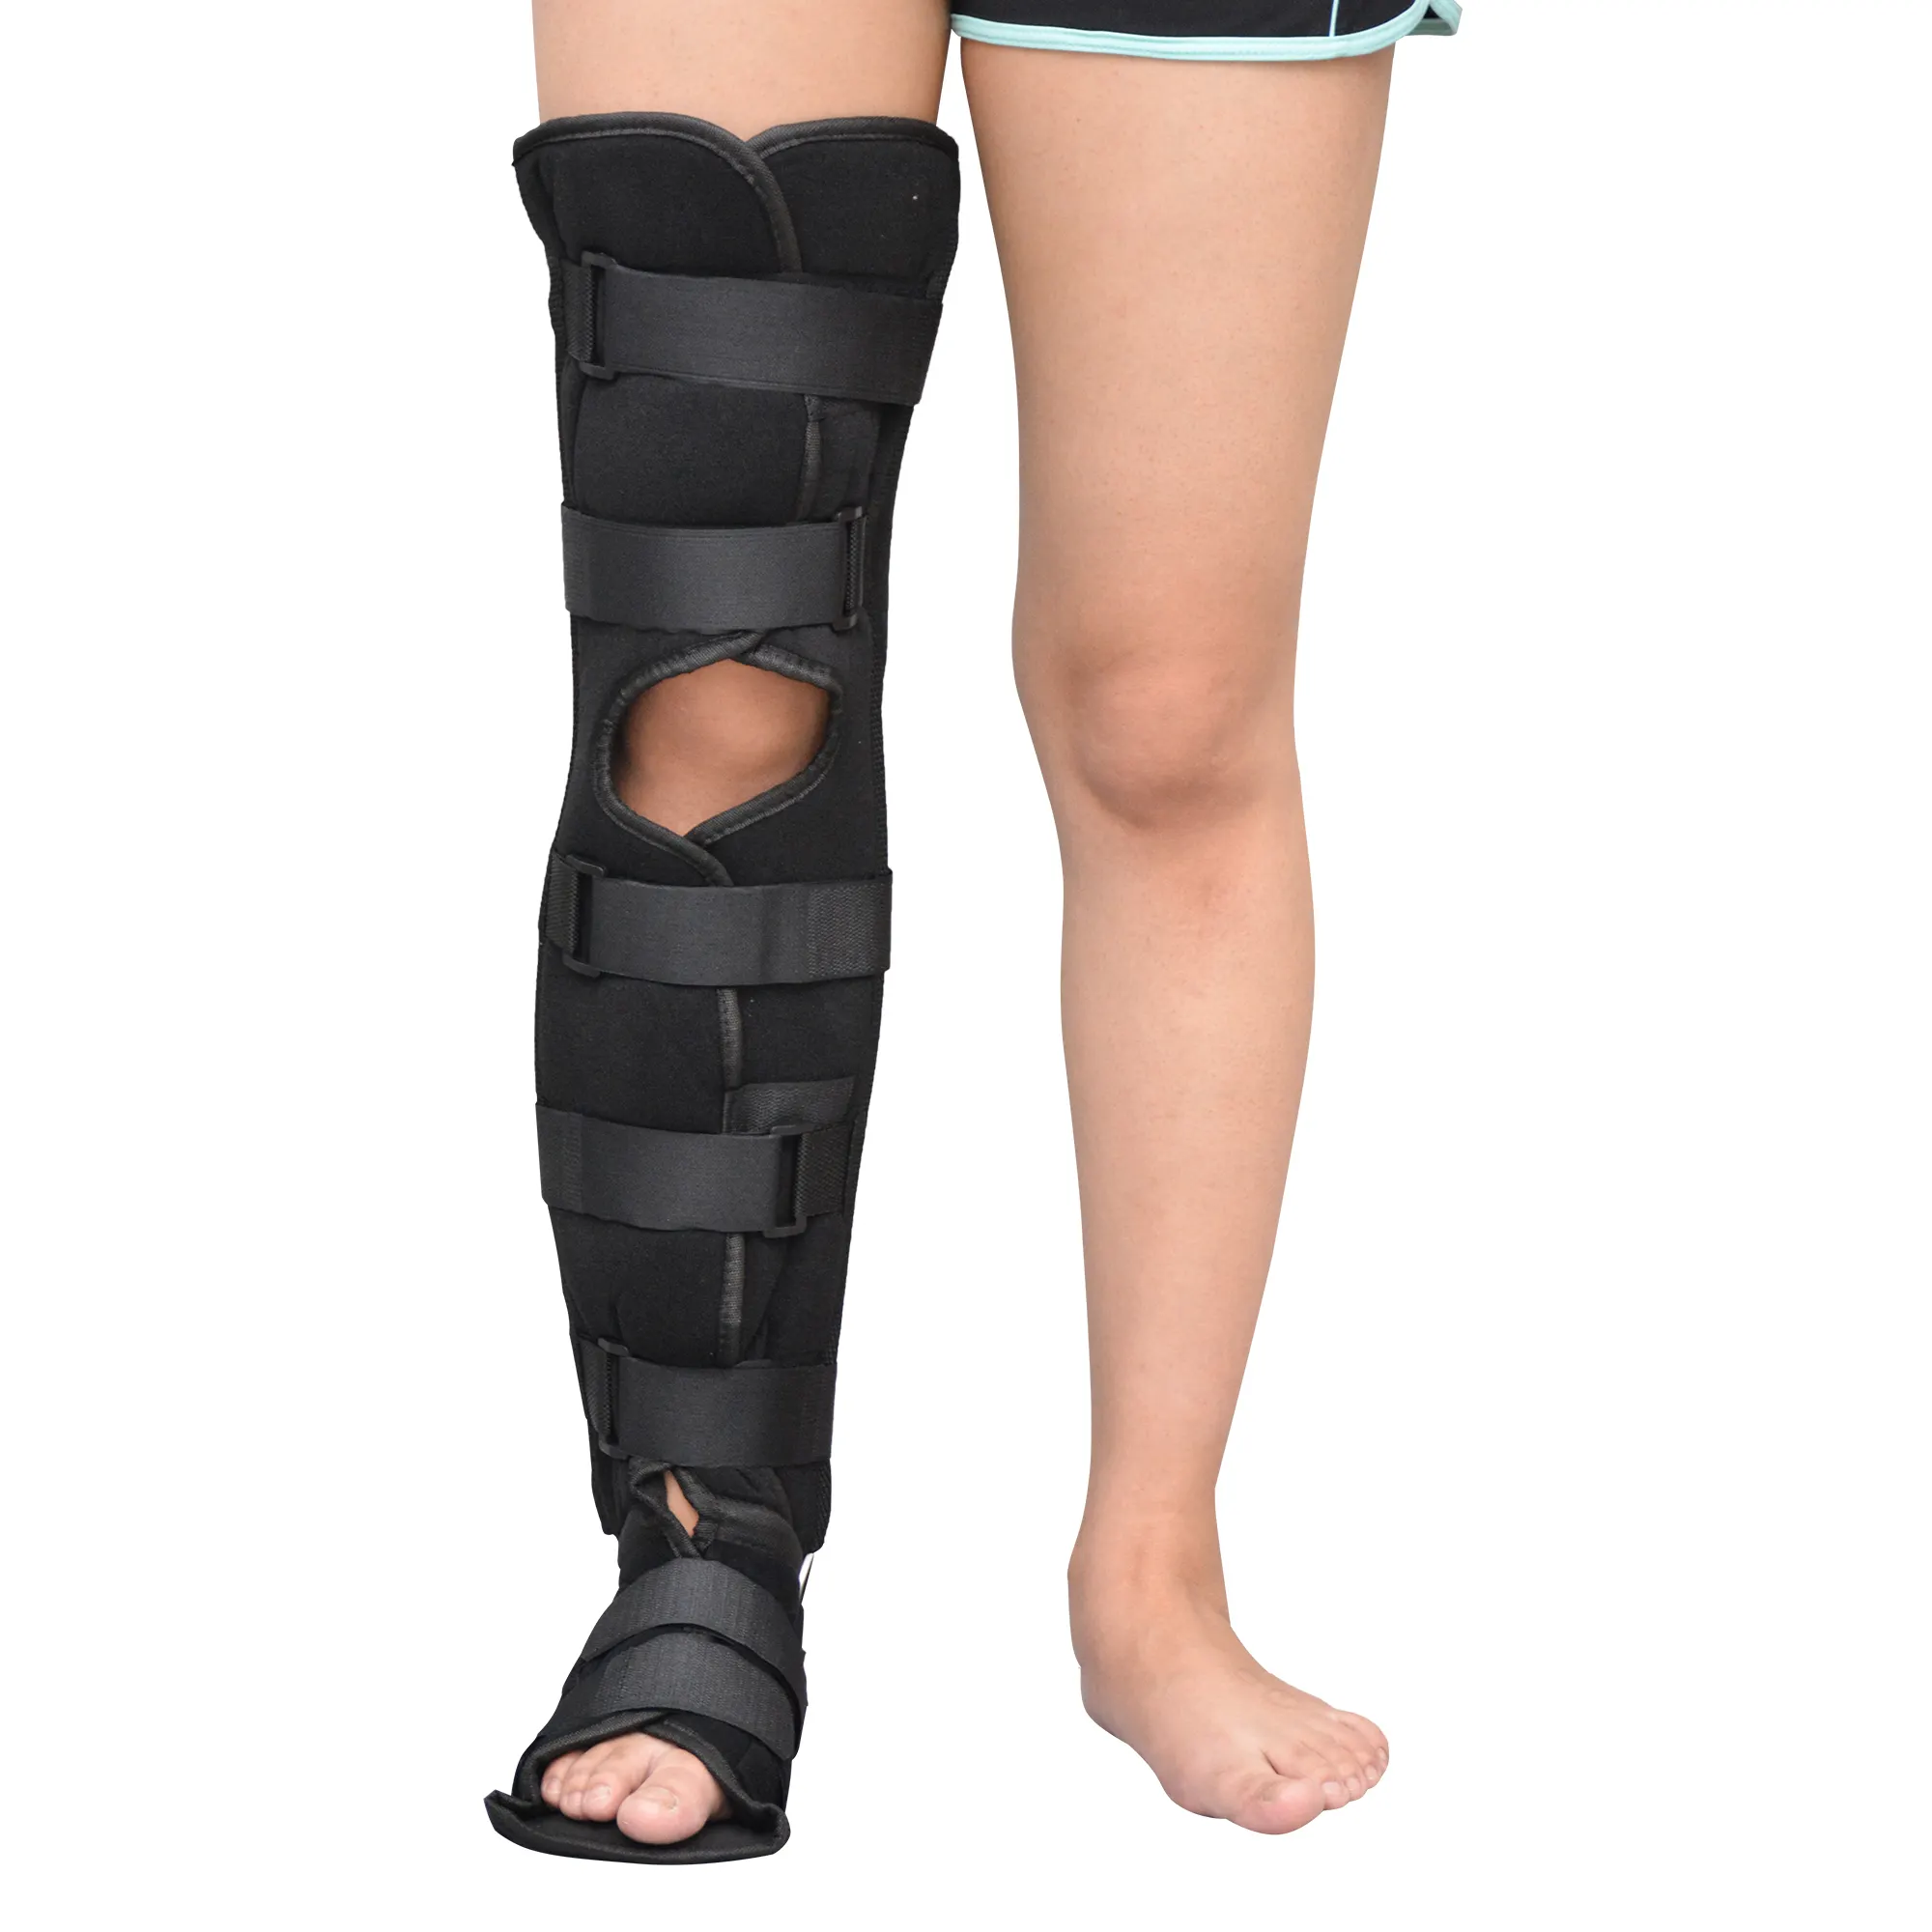 دعامة للركبة مخصصة بسعر تنافسي لحماية المفاصل وسادة ضغط ودعم الركبة للكبار